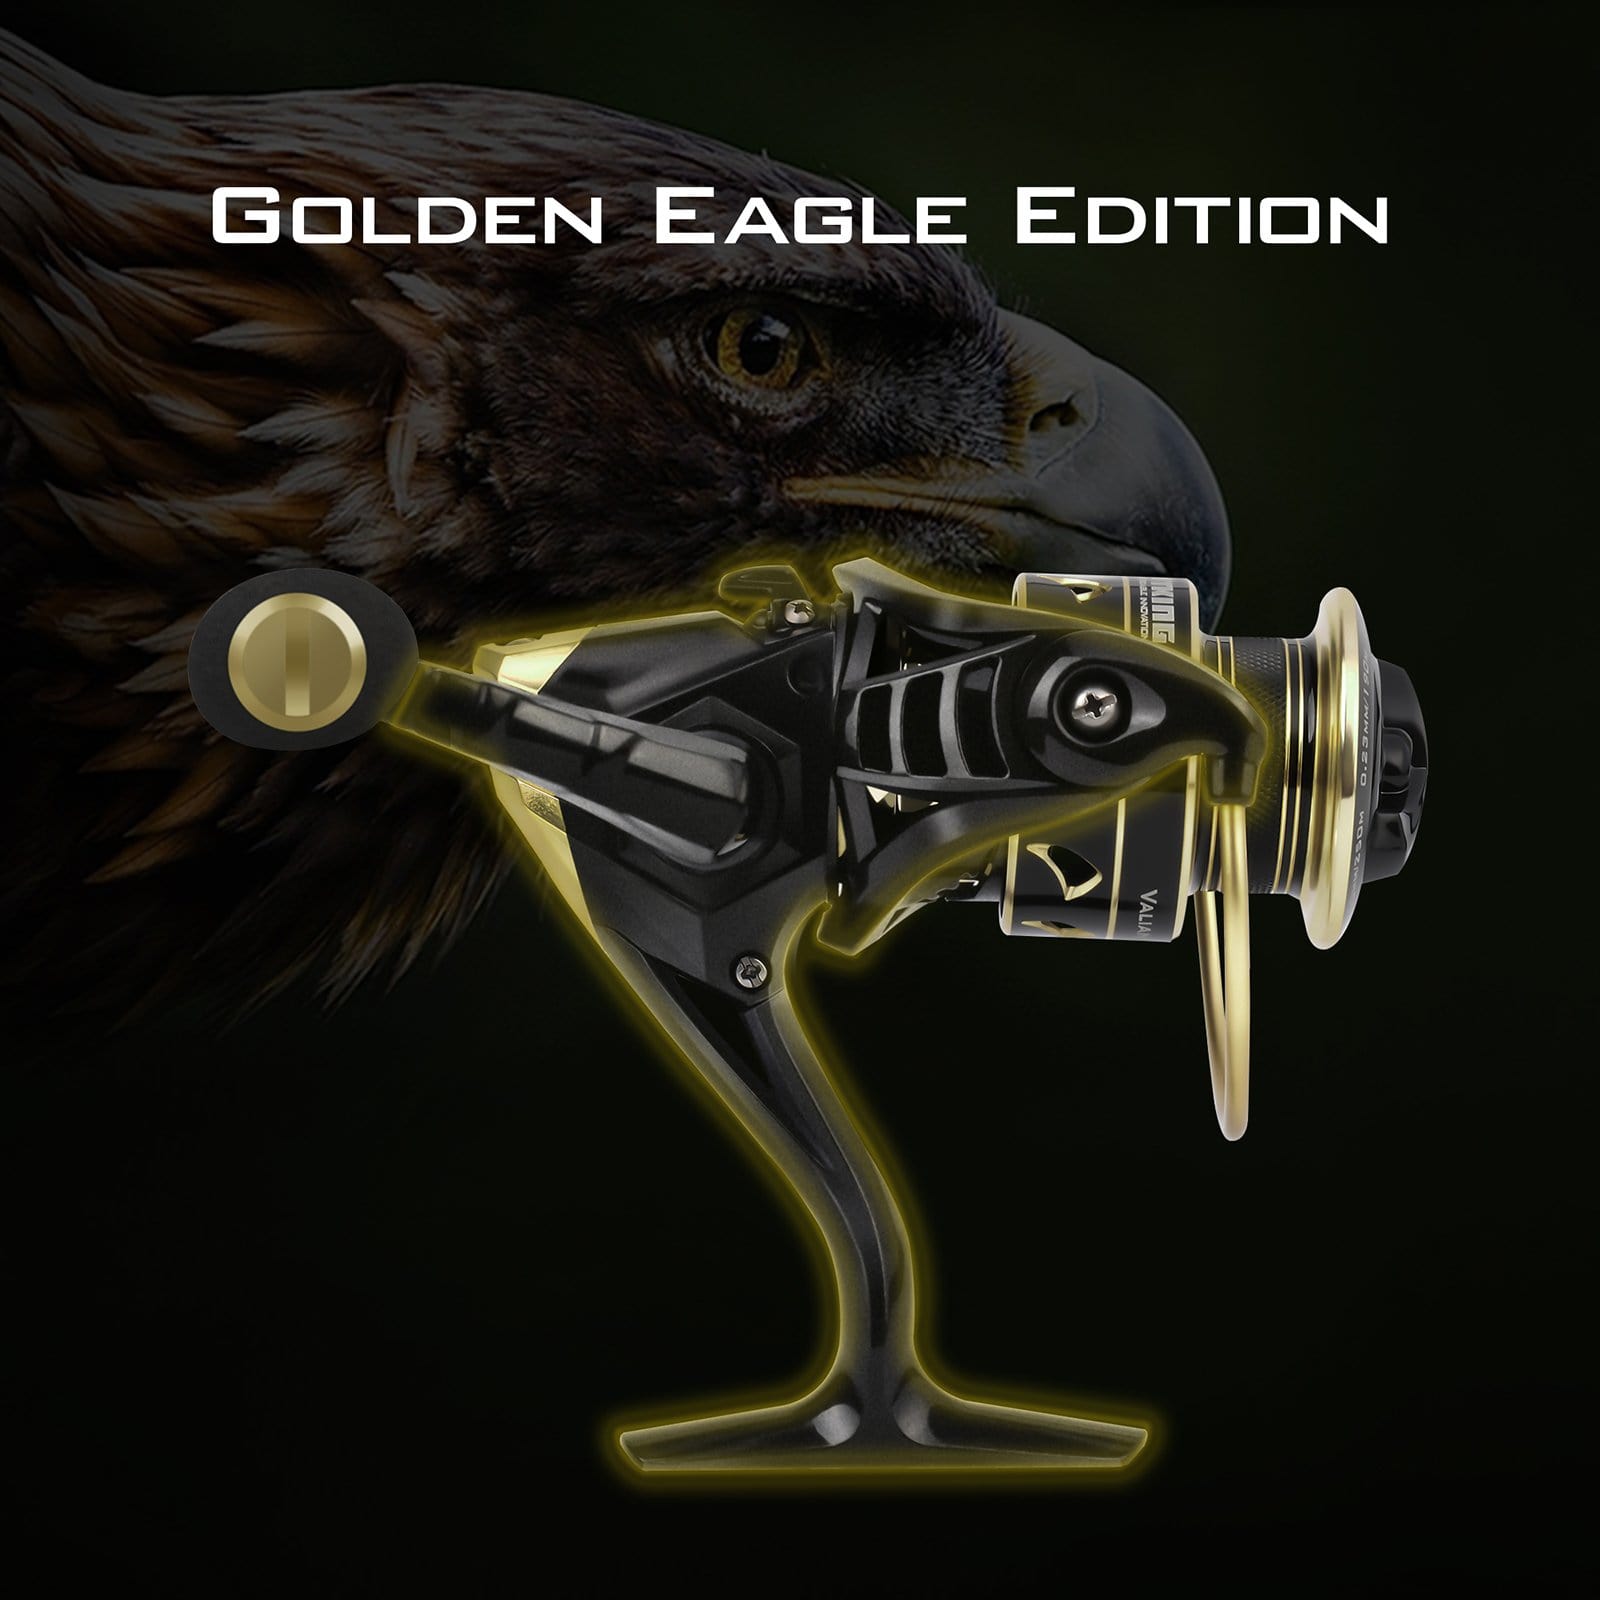 KastKing Valiant Eagle Spinning Reel Gold - 2000 / 6.2:1